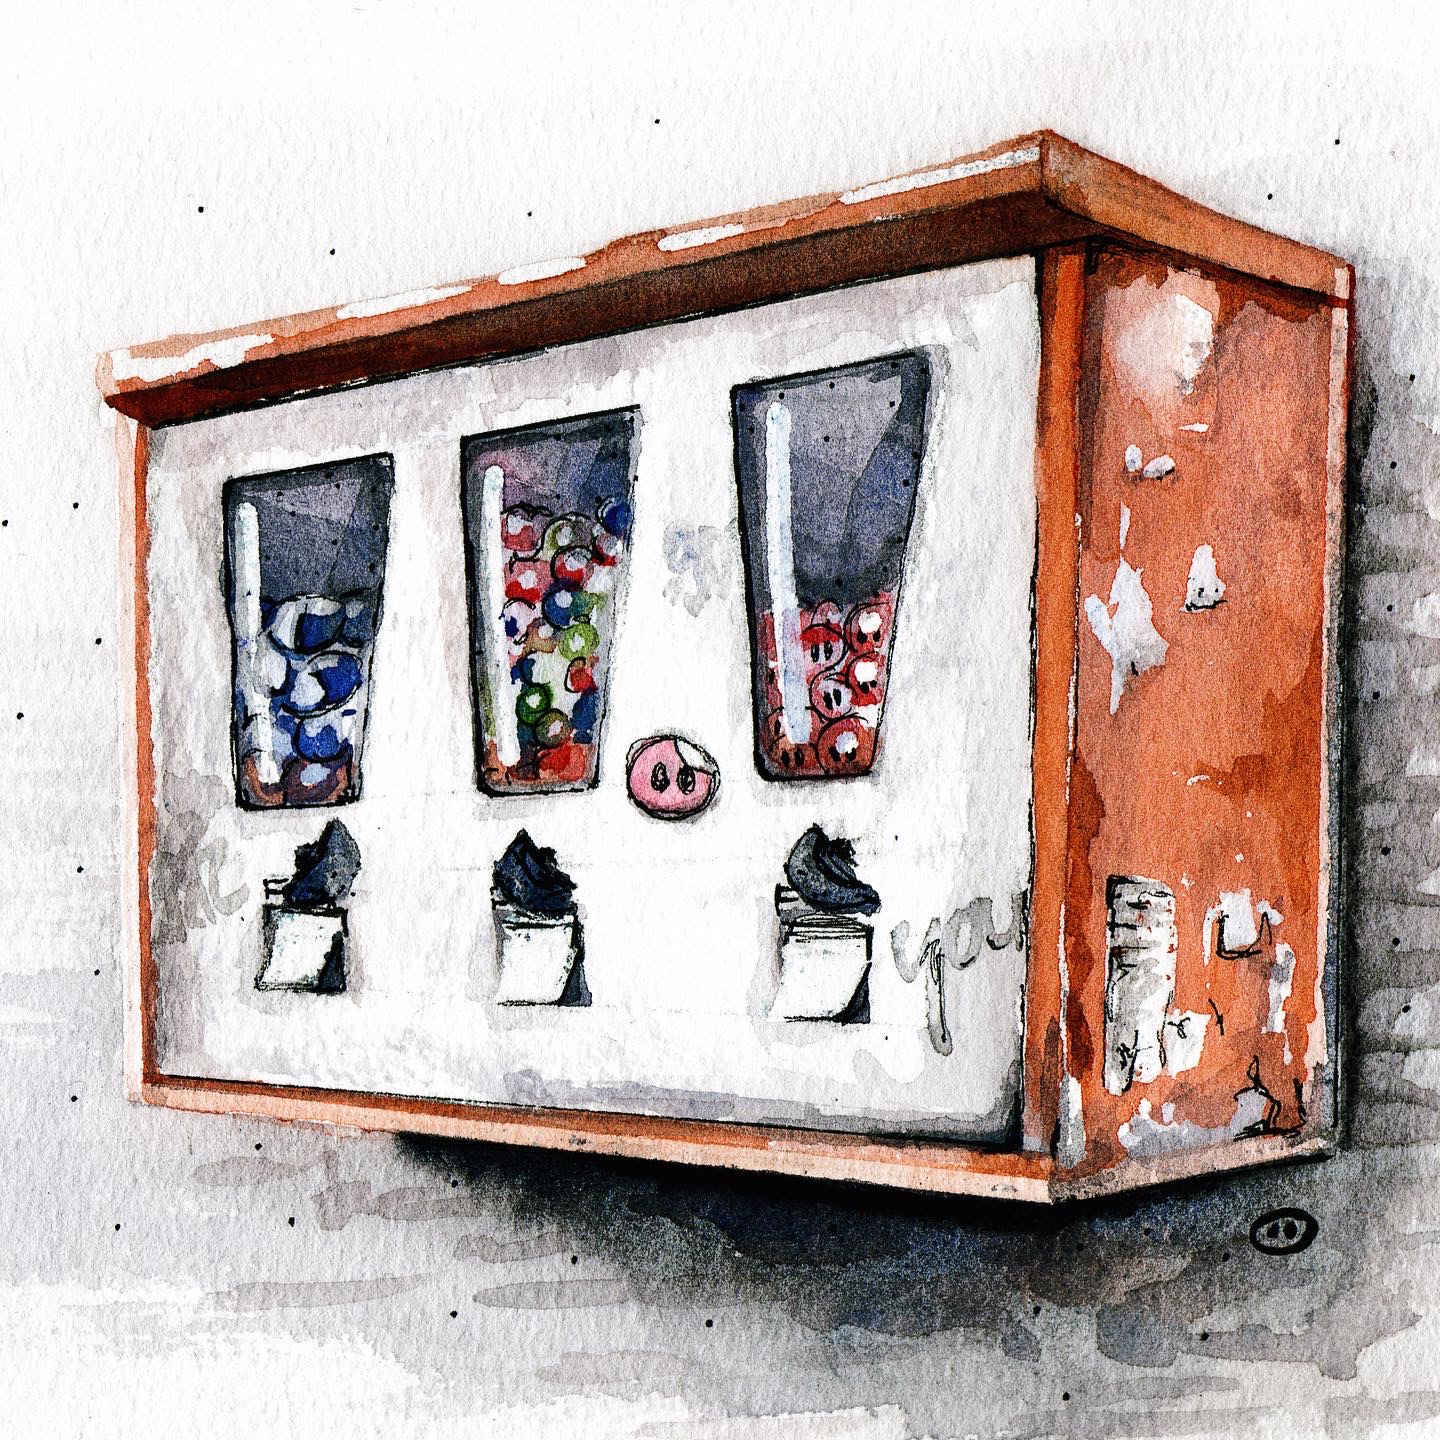 Kaugummiautomat